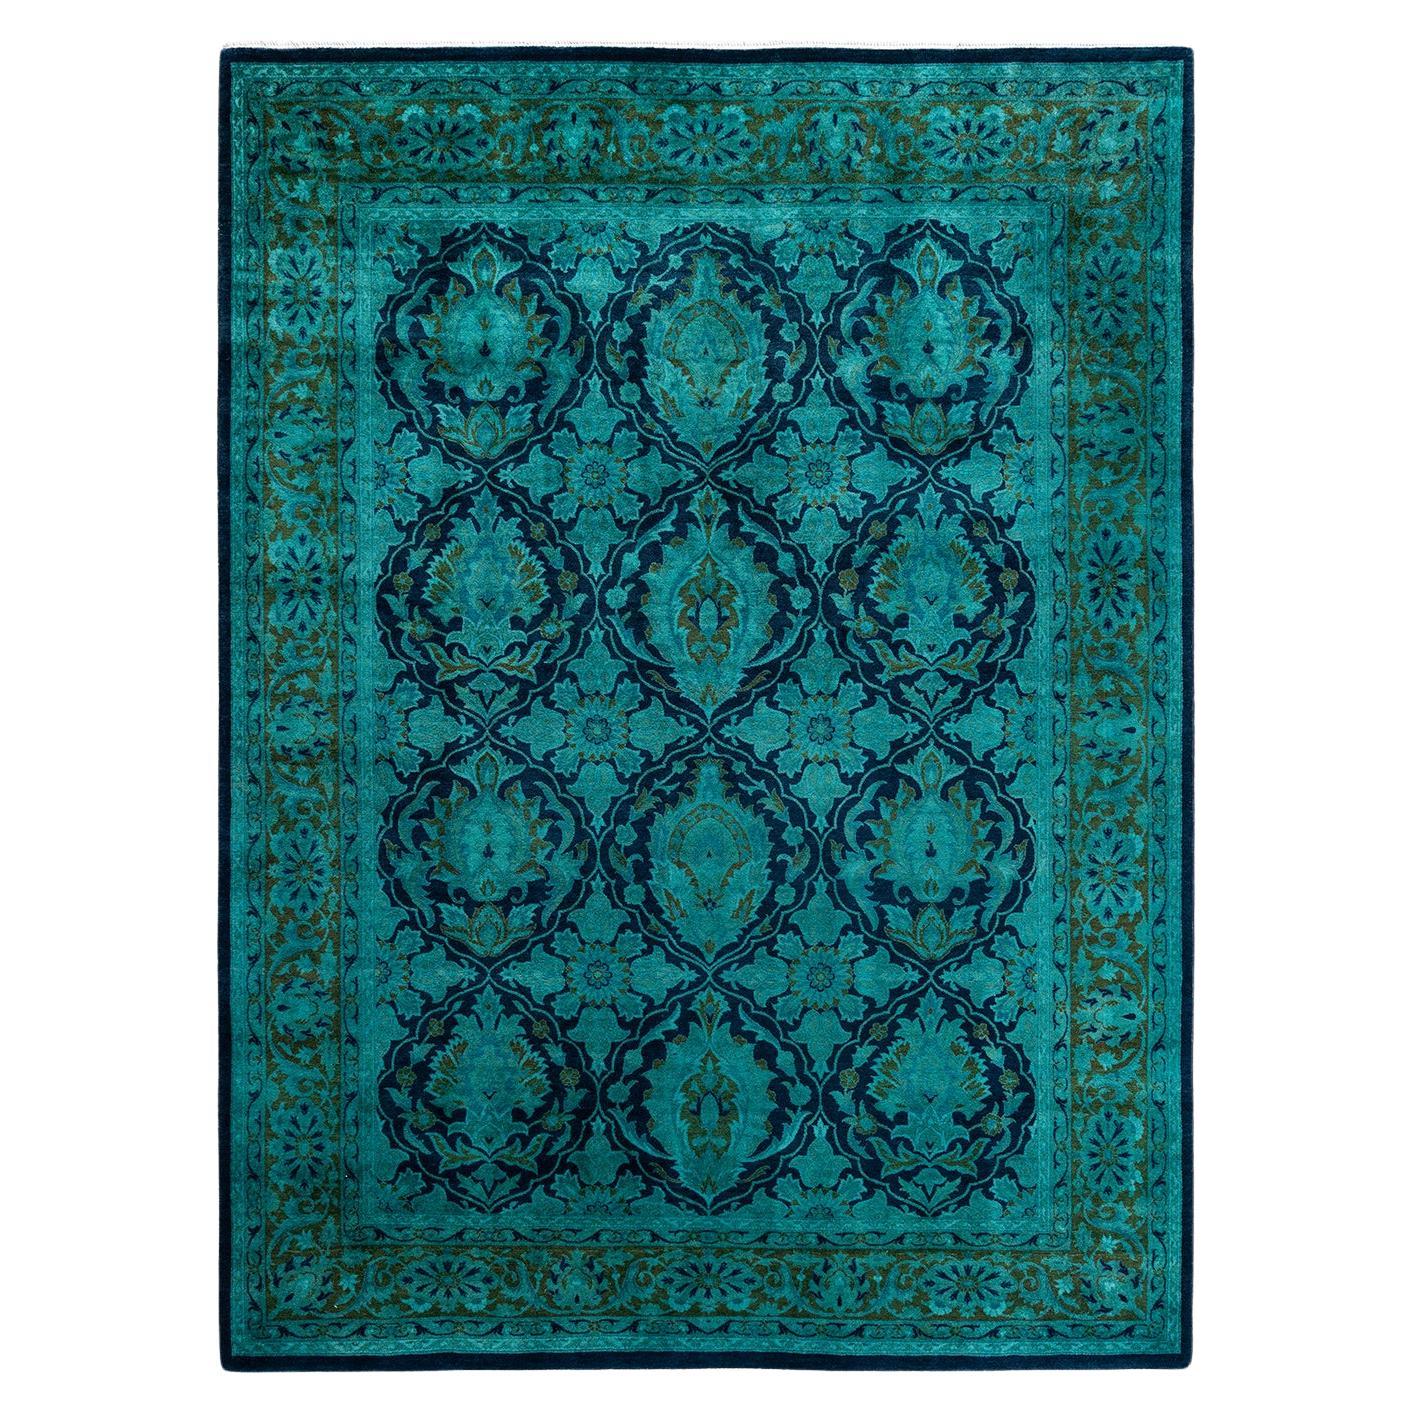 Tapis de sol contemporain en laine surteinte nouée à la main, bleu